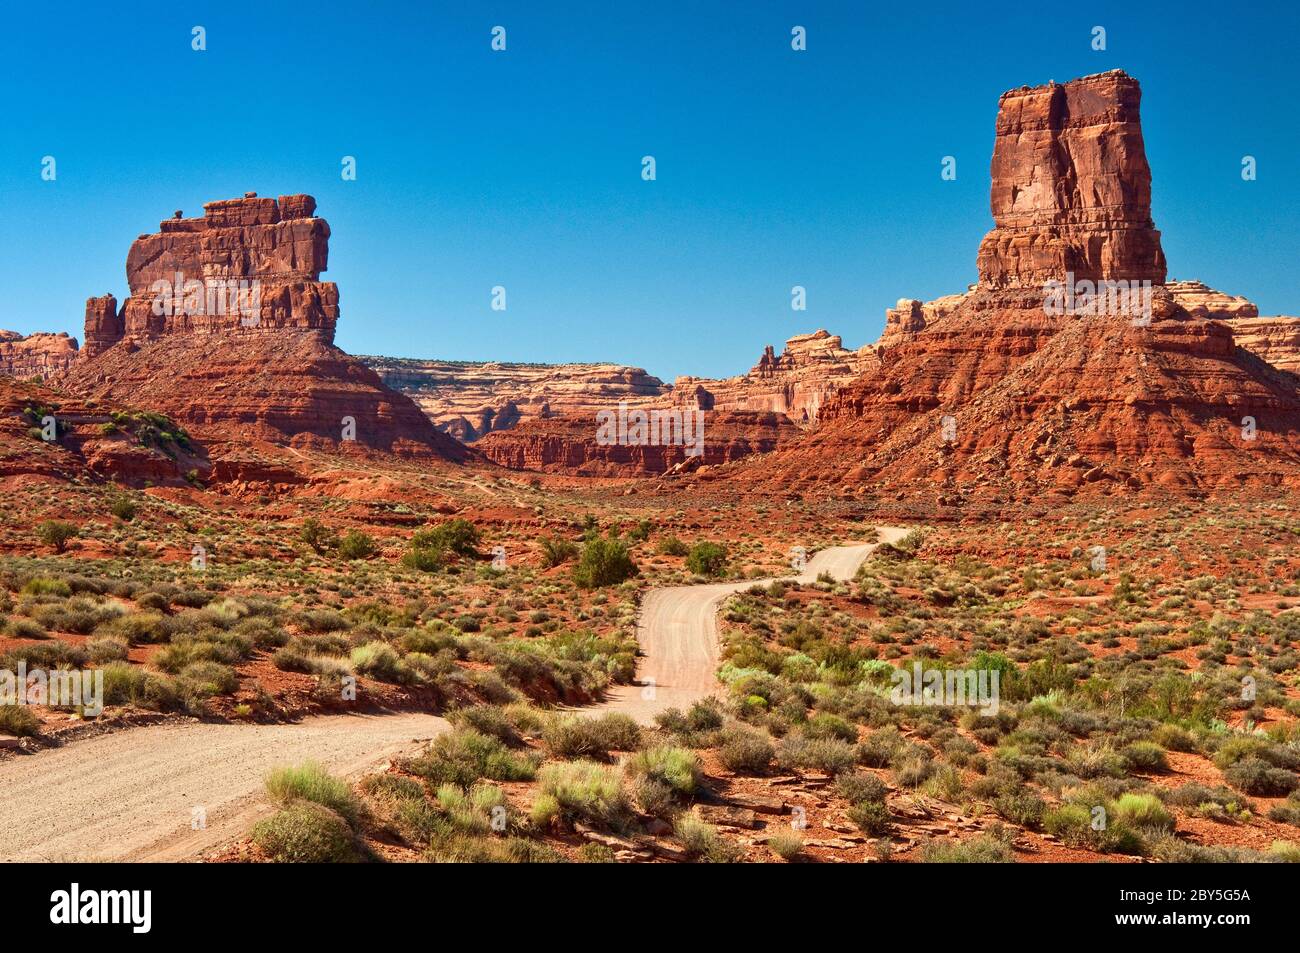 Strada sterrata, formazioni rocciose di arenaria su appartamenti a spazzola nella Valle degli dei, Bears Ears National Monument, Cedar Mesa, Utah, USA Foto Stock